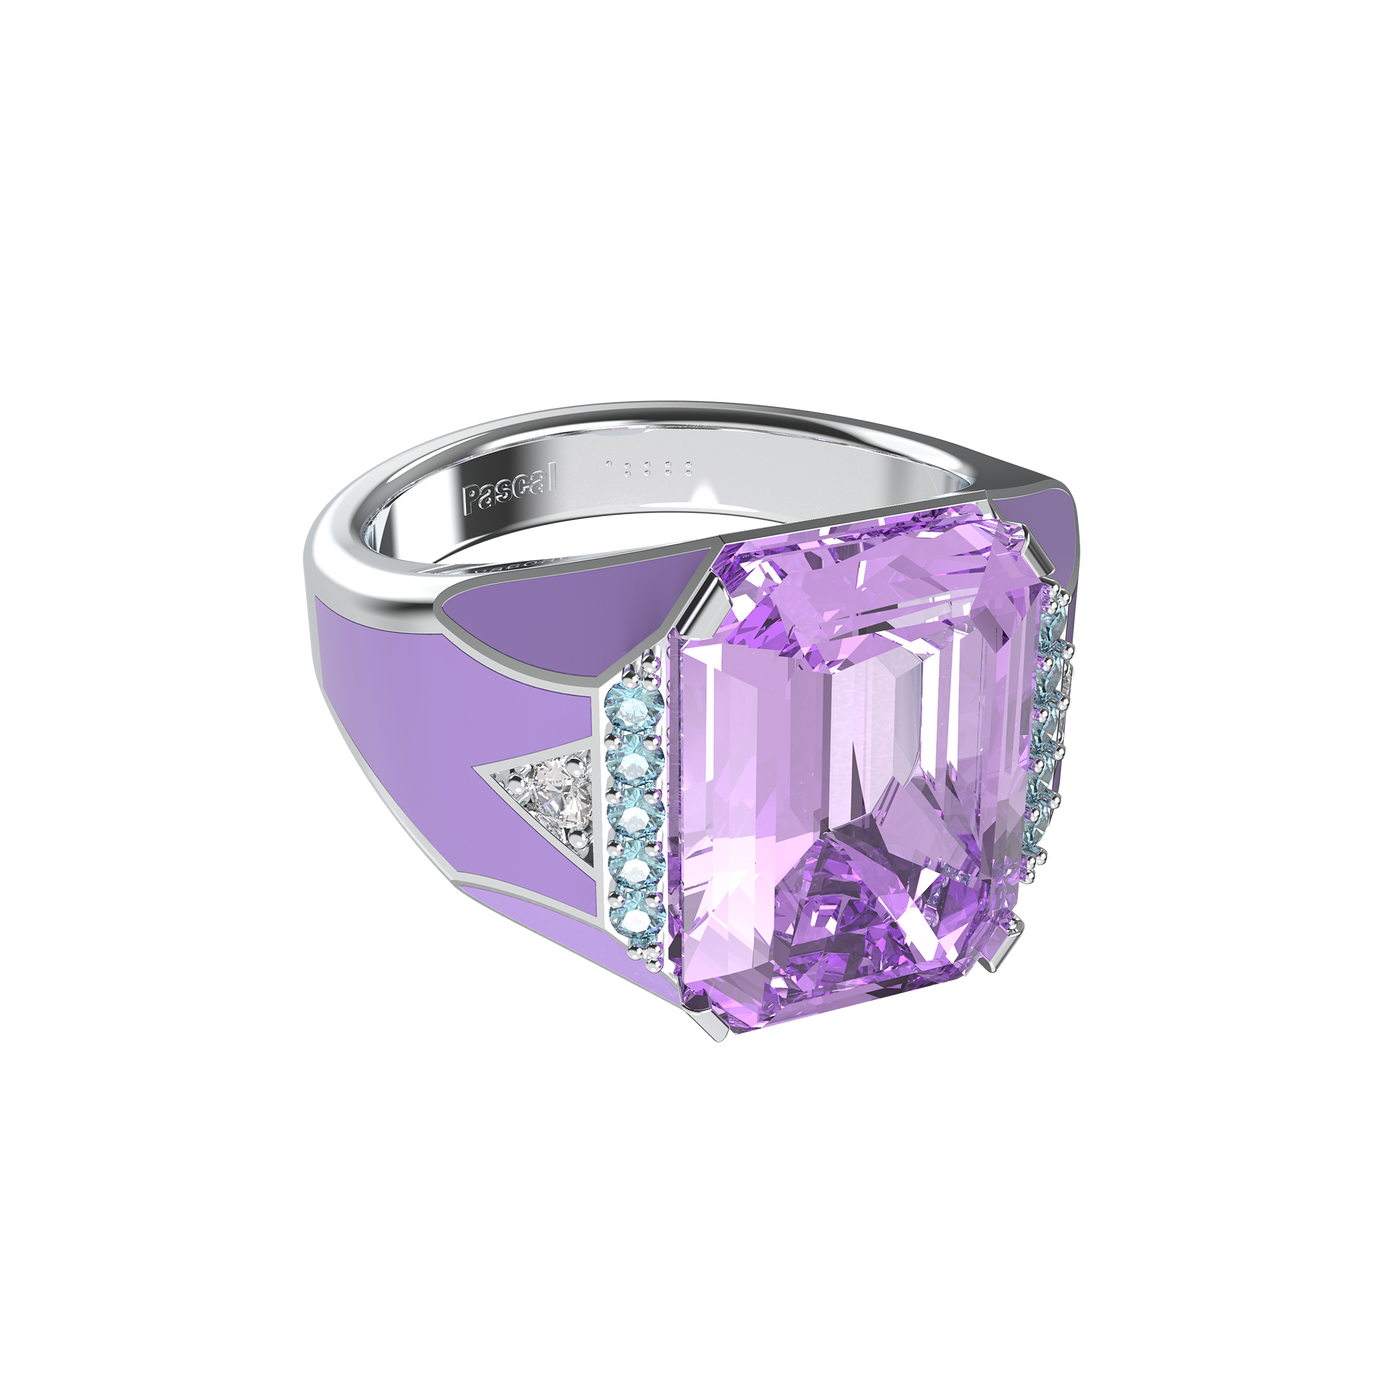 Artdeco Prism Diamant cocktail ringe